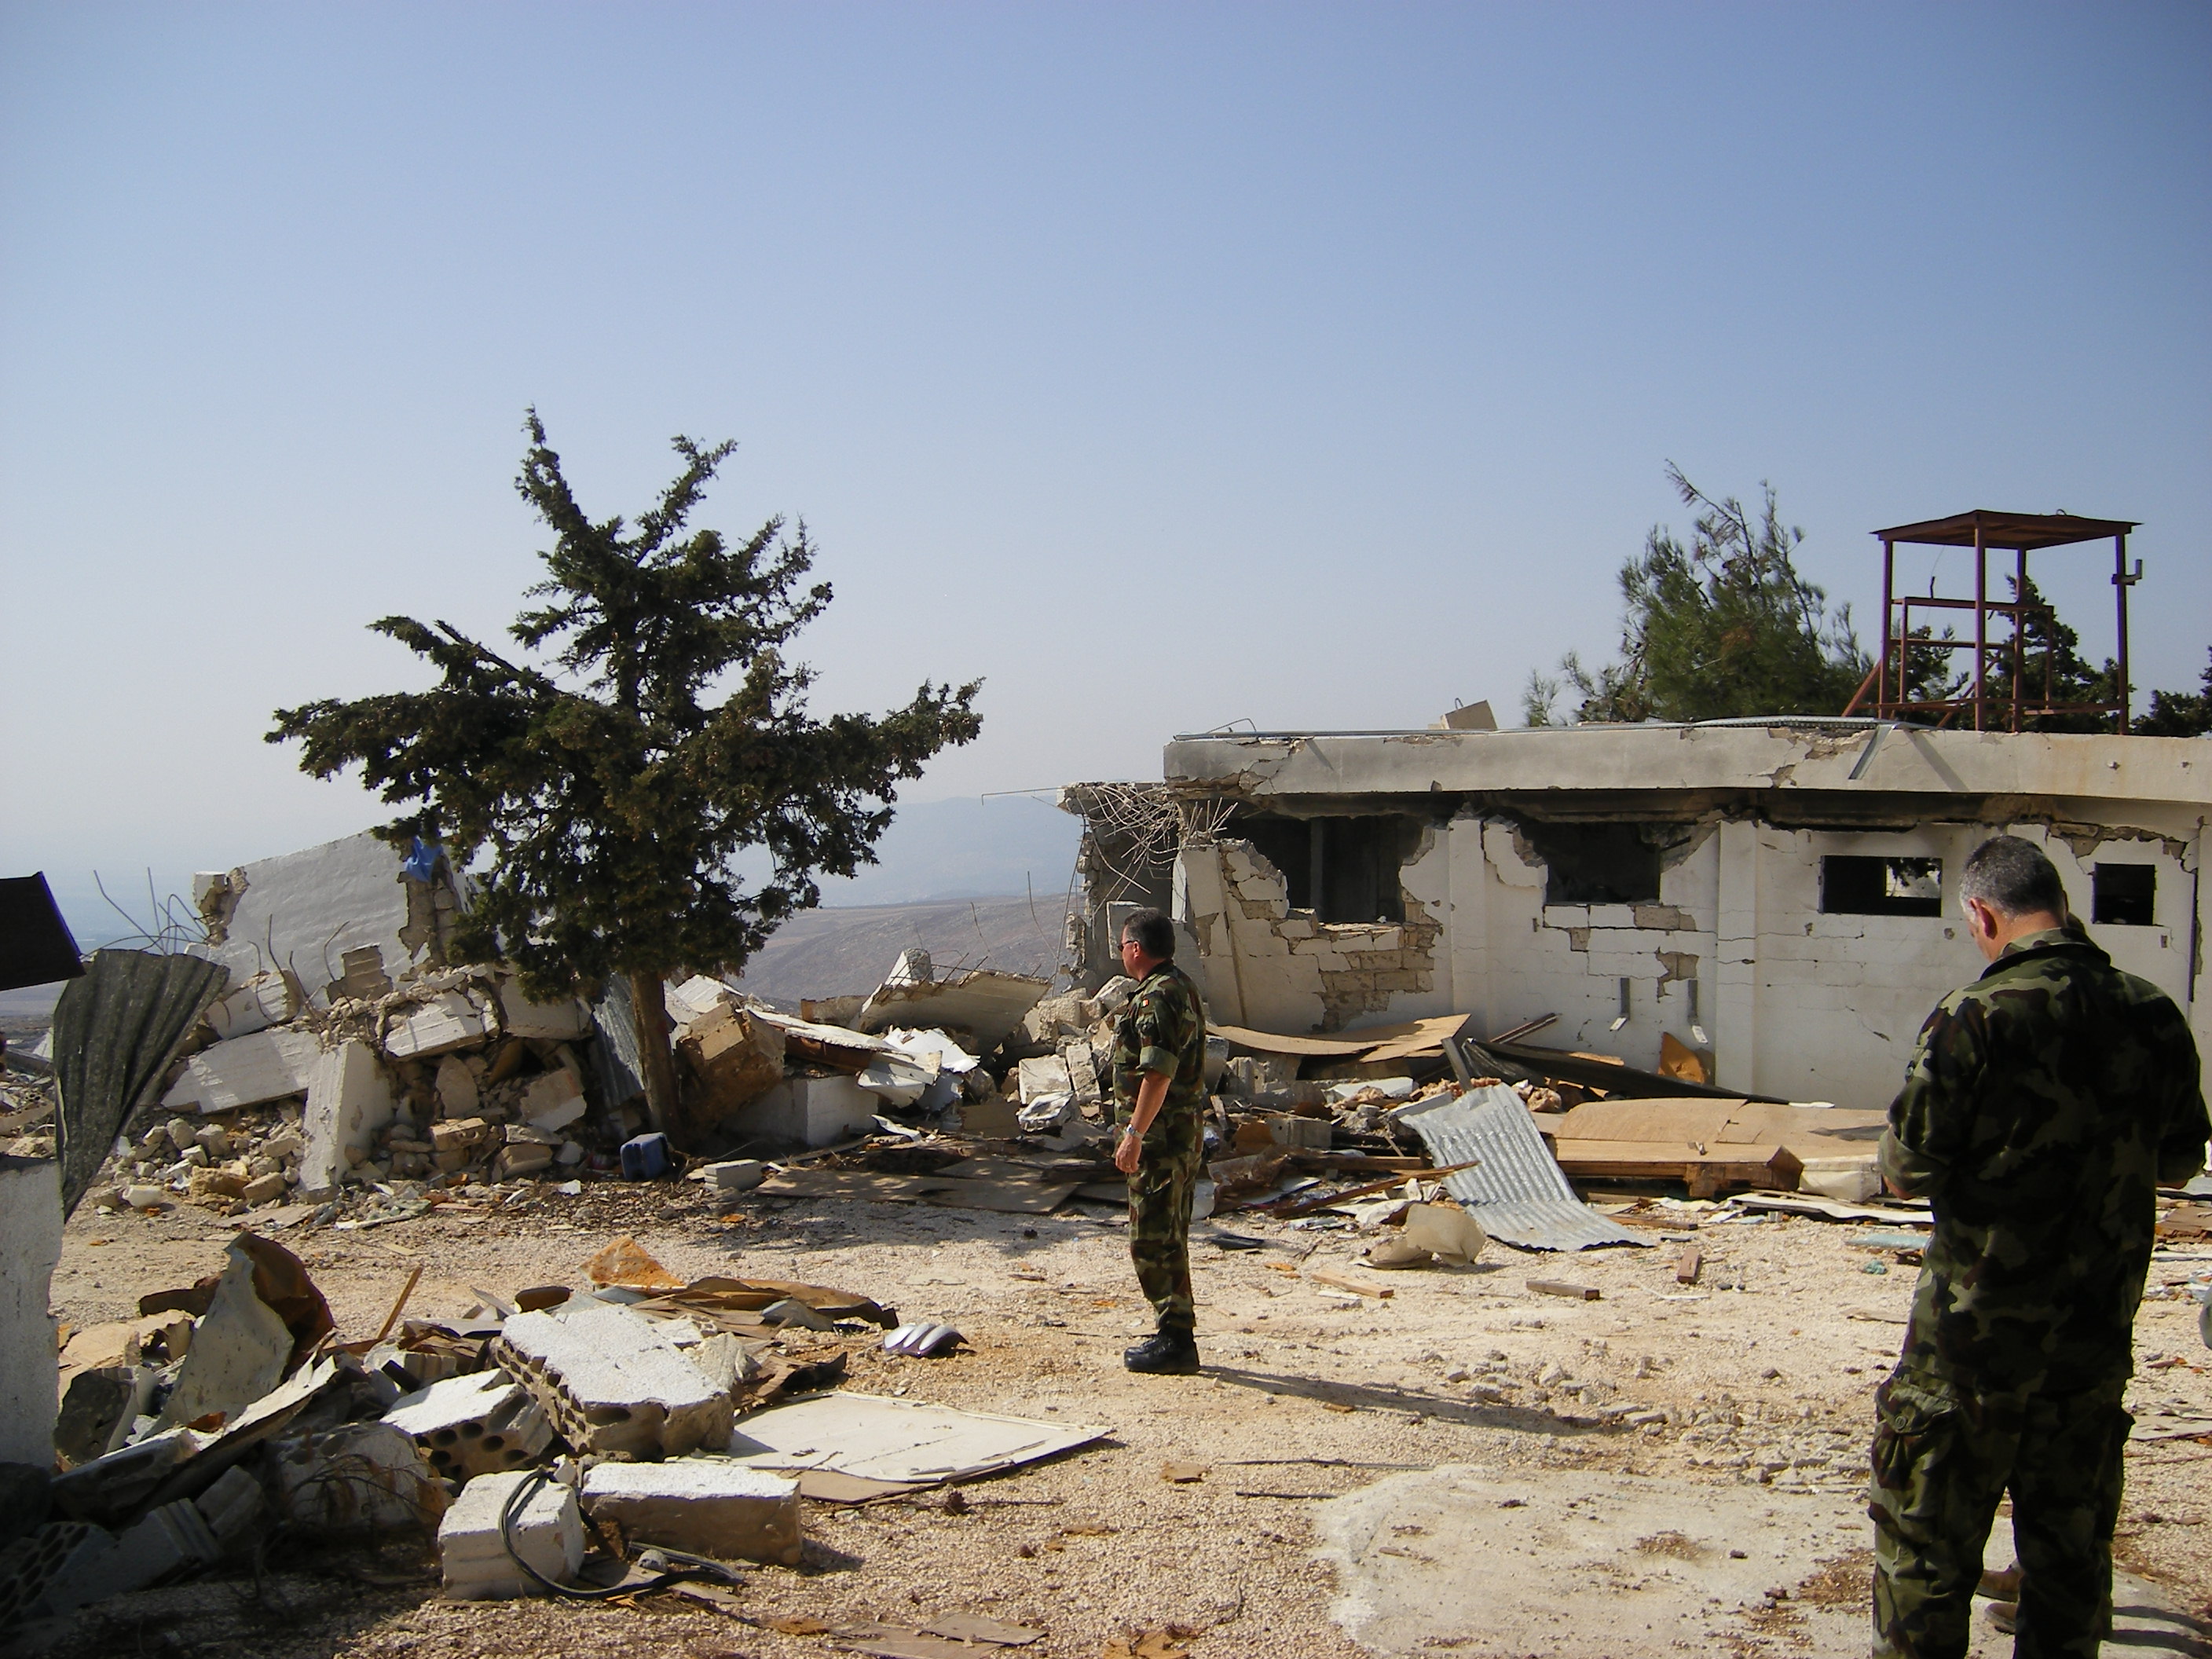 Destroyed_UN_base_in_Lebanon.jpg